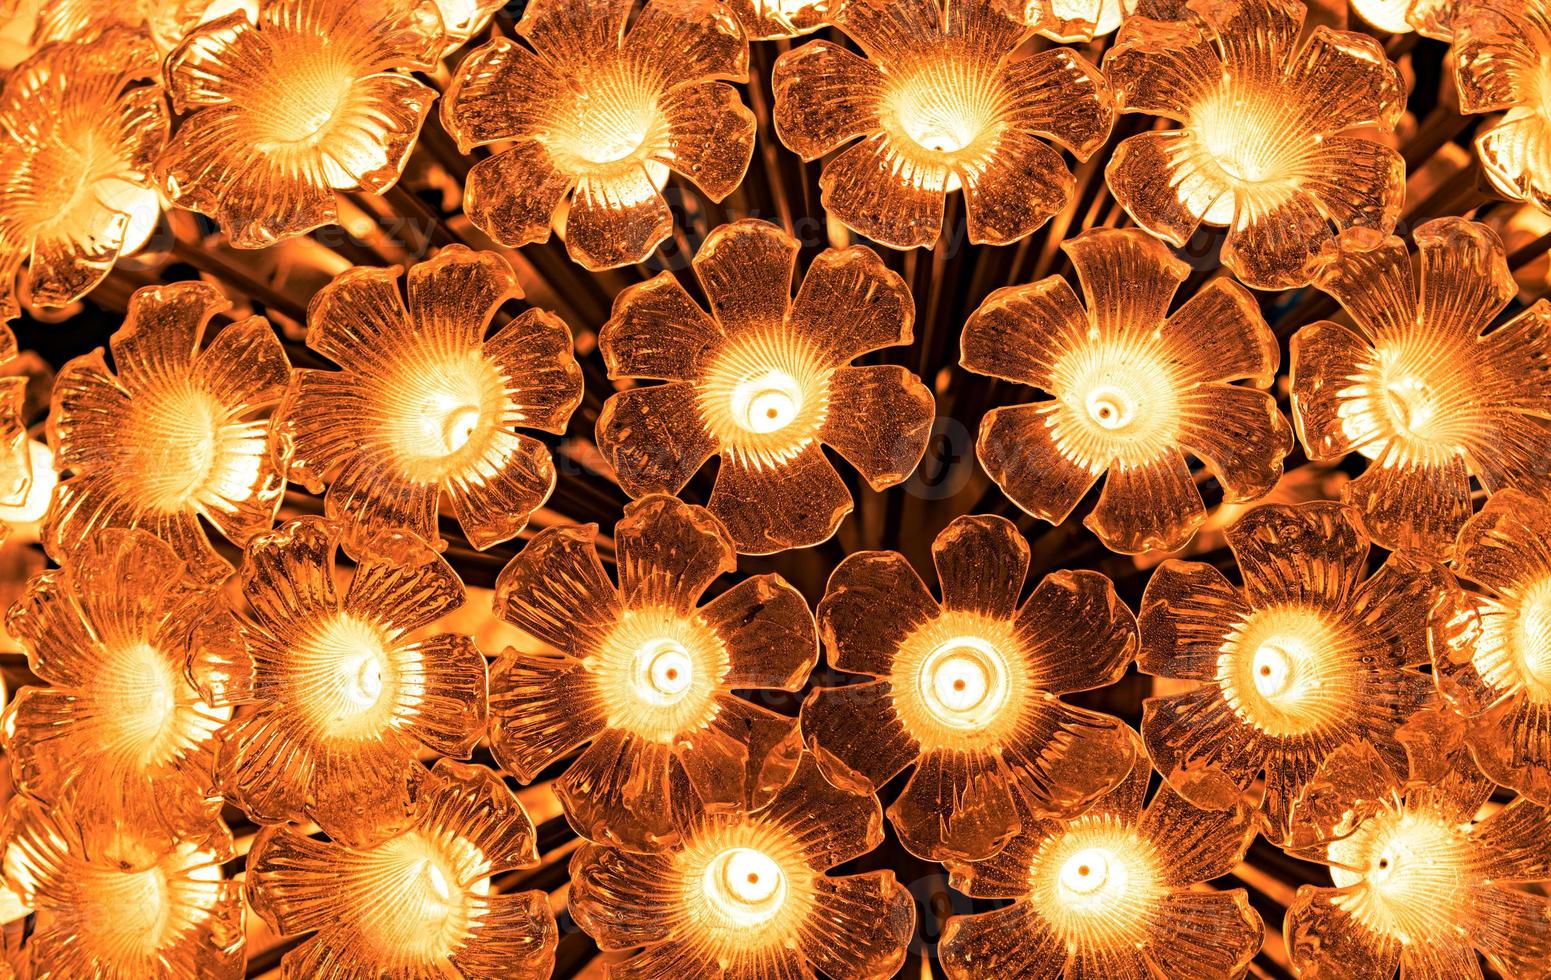 Flower shaped glass lamp. LED light bulb decorative with flower shaped glass. Decorative light in classic design style. Golden light for interior building decor in festival or event. Lighting. photo